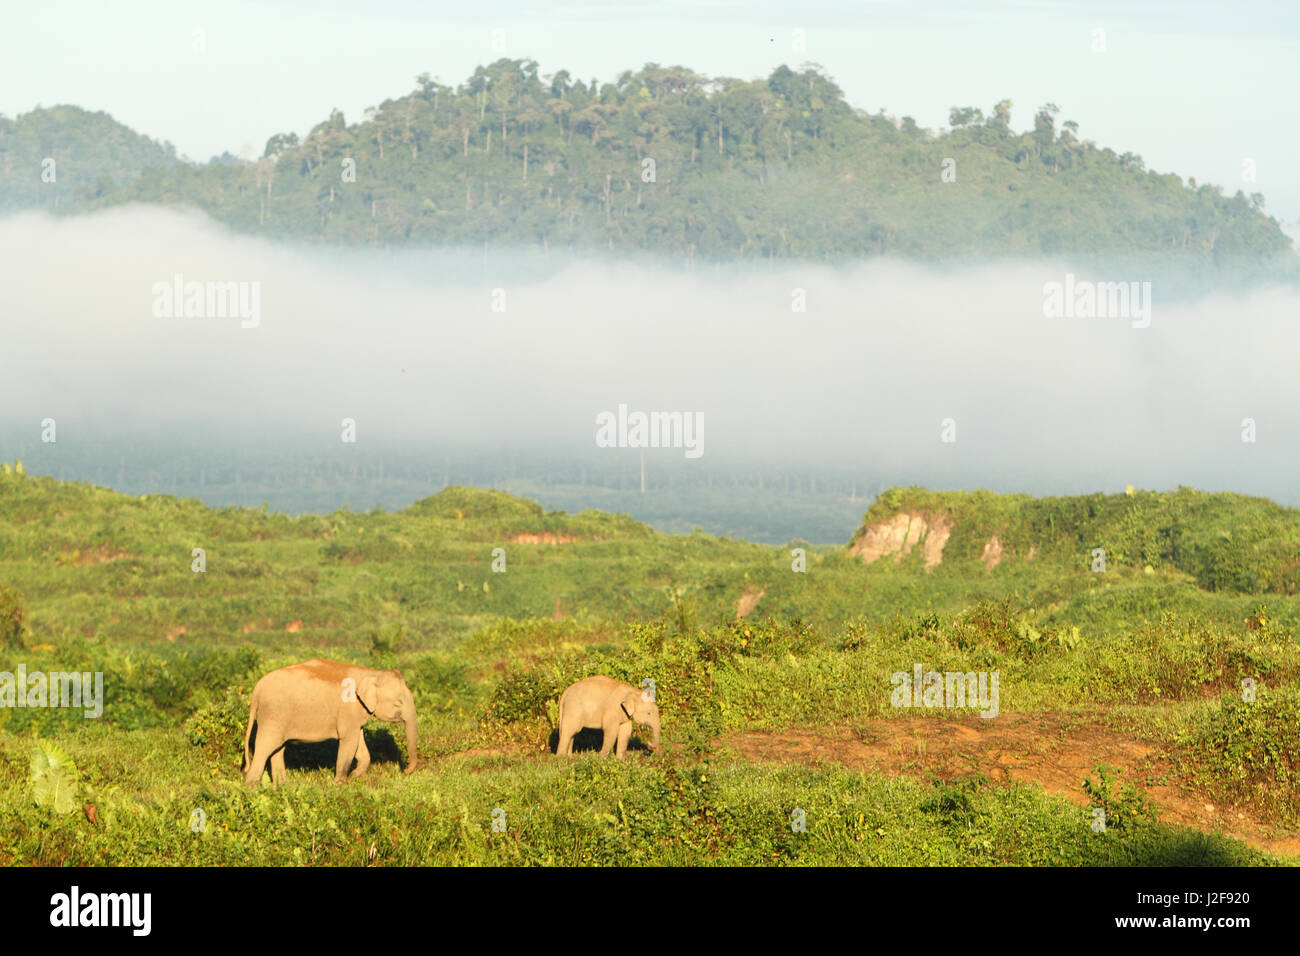 Mère et jeune Elephas maximus borneensis ; Bornéo éléphant pygmée sur le plantage de palme à chercher de la nourriture Banque D'Images